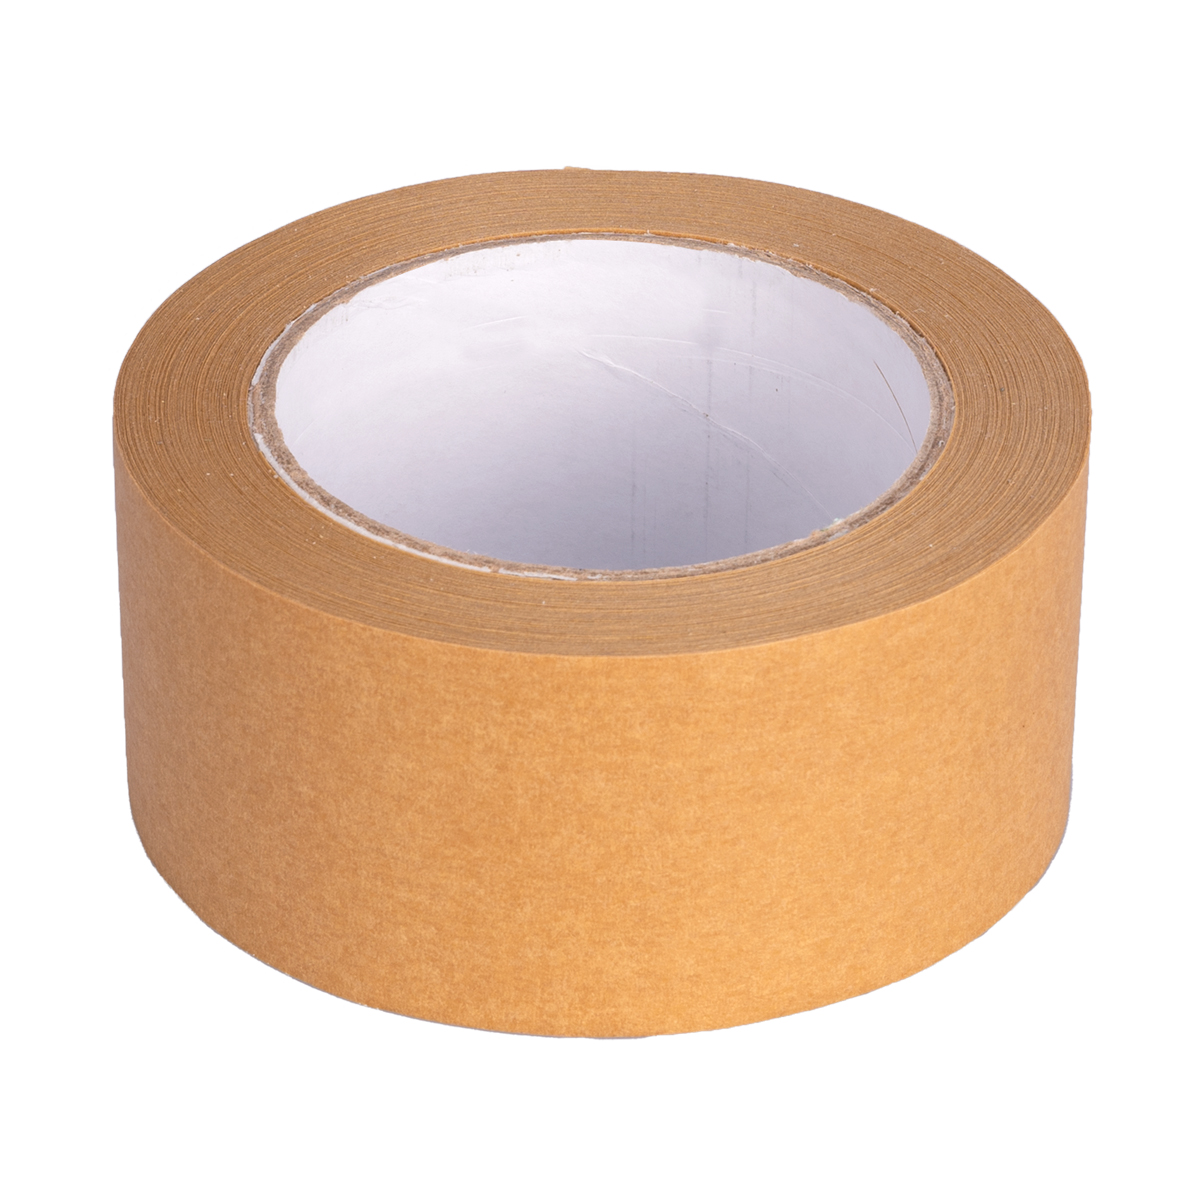 Paper adhesive tape 50m x 50mm, brown